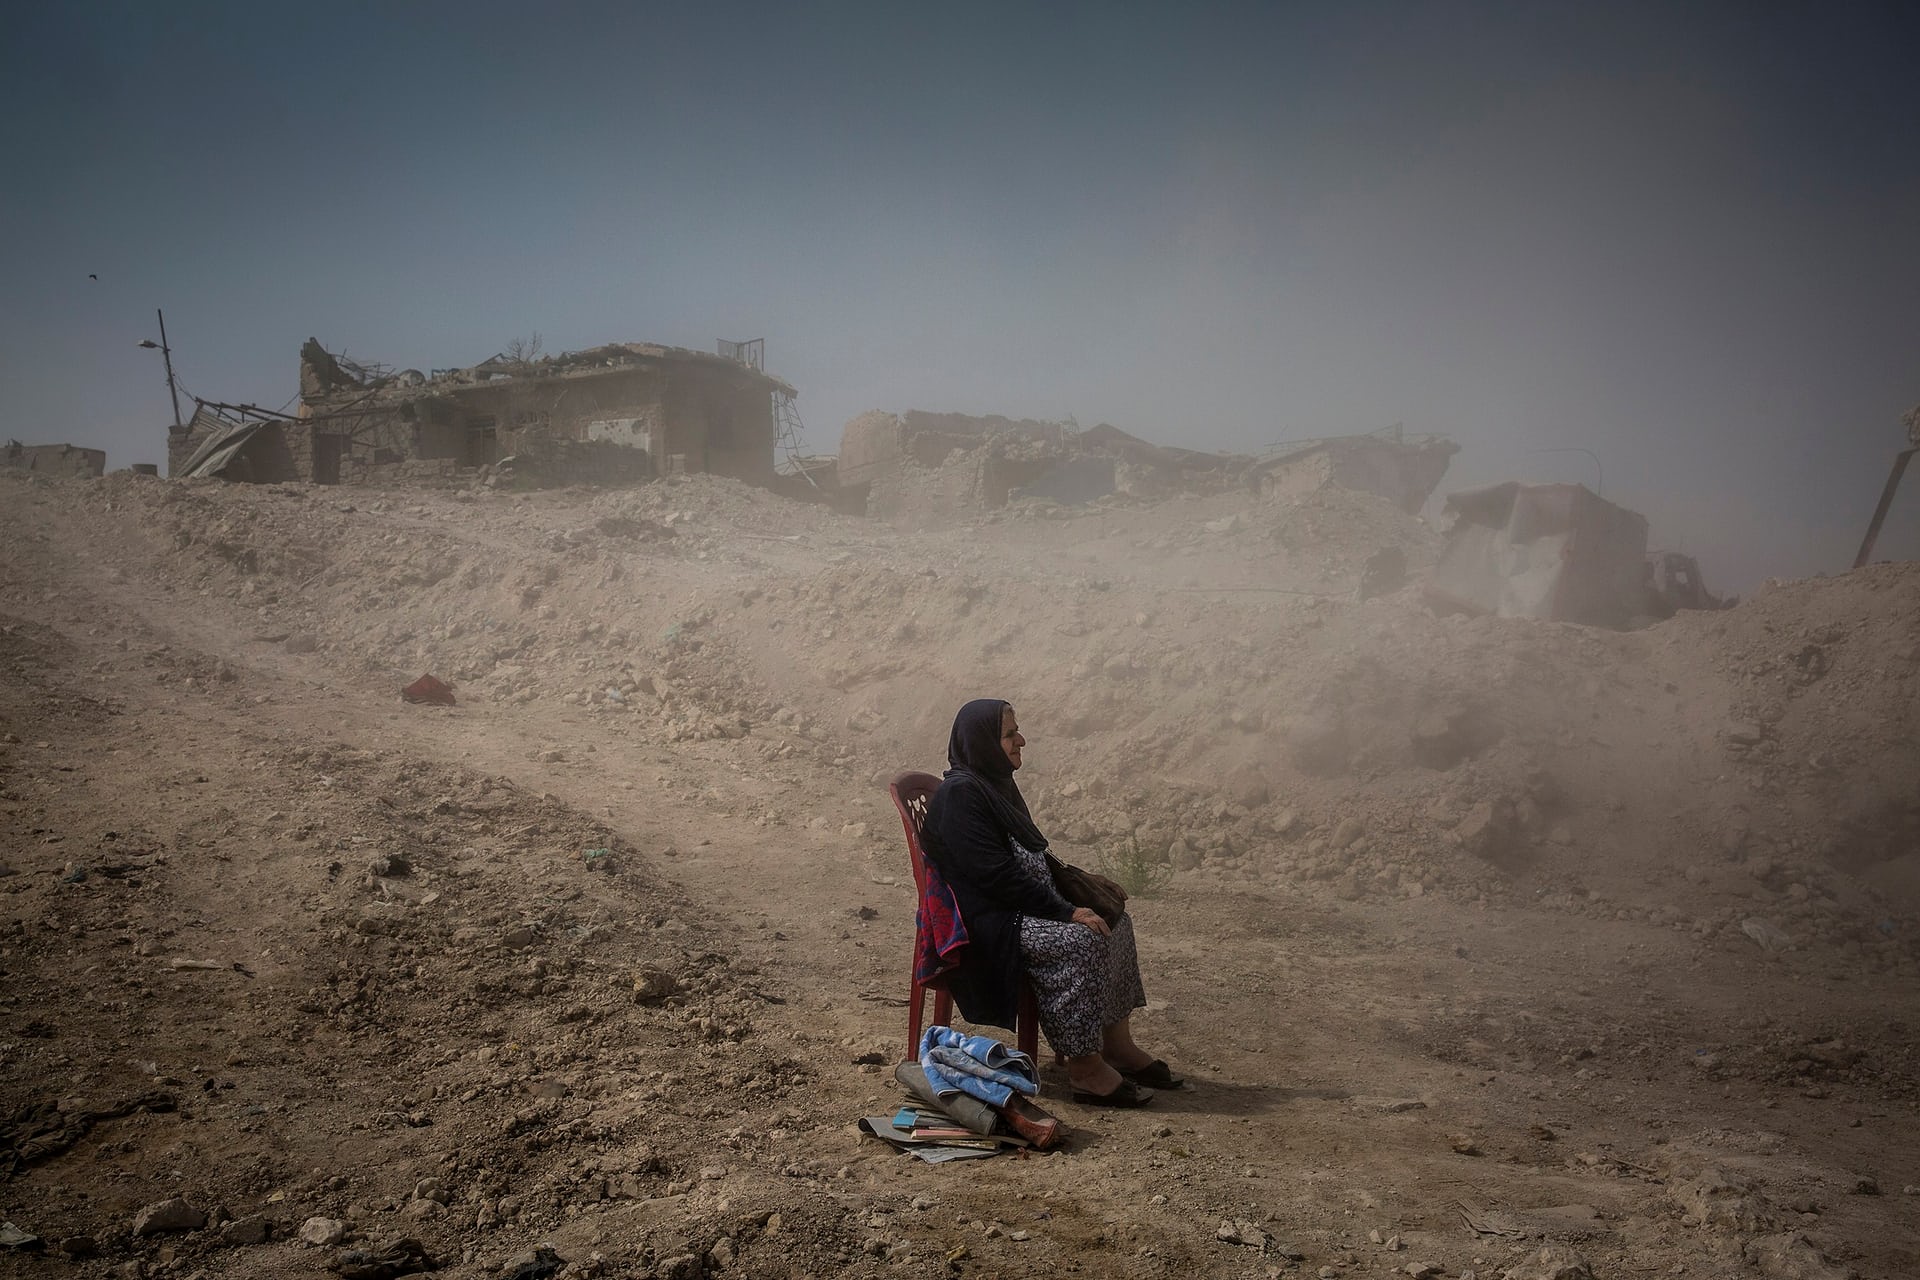 3000 6Giải nhất hạng mục Tin tức. Bà Nadhira Aziz đang ngồi quan sát những công binh của quân đội Iraq chôn xác em gái và cháu gái của của bà tại thành phố Mosul. Trước đó, thành phố này chứng kiến một cuộc không kích dữ dội vào tháng 6 khiến hơn 9.000 dân thường thiệt mạng. Ảnh: Ivor Prickett/New York Times/Handout/EPA.